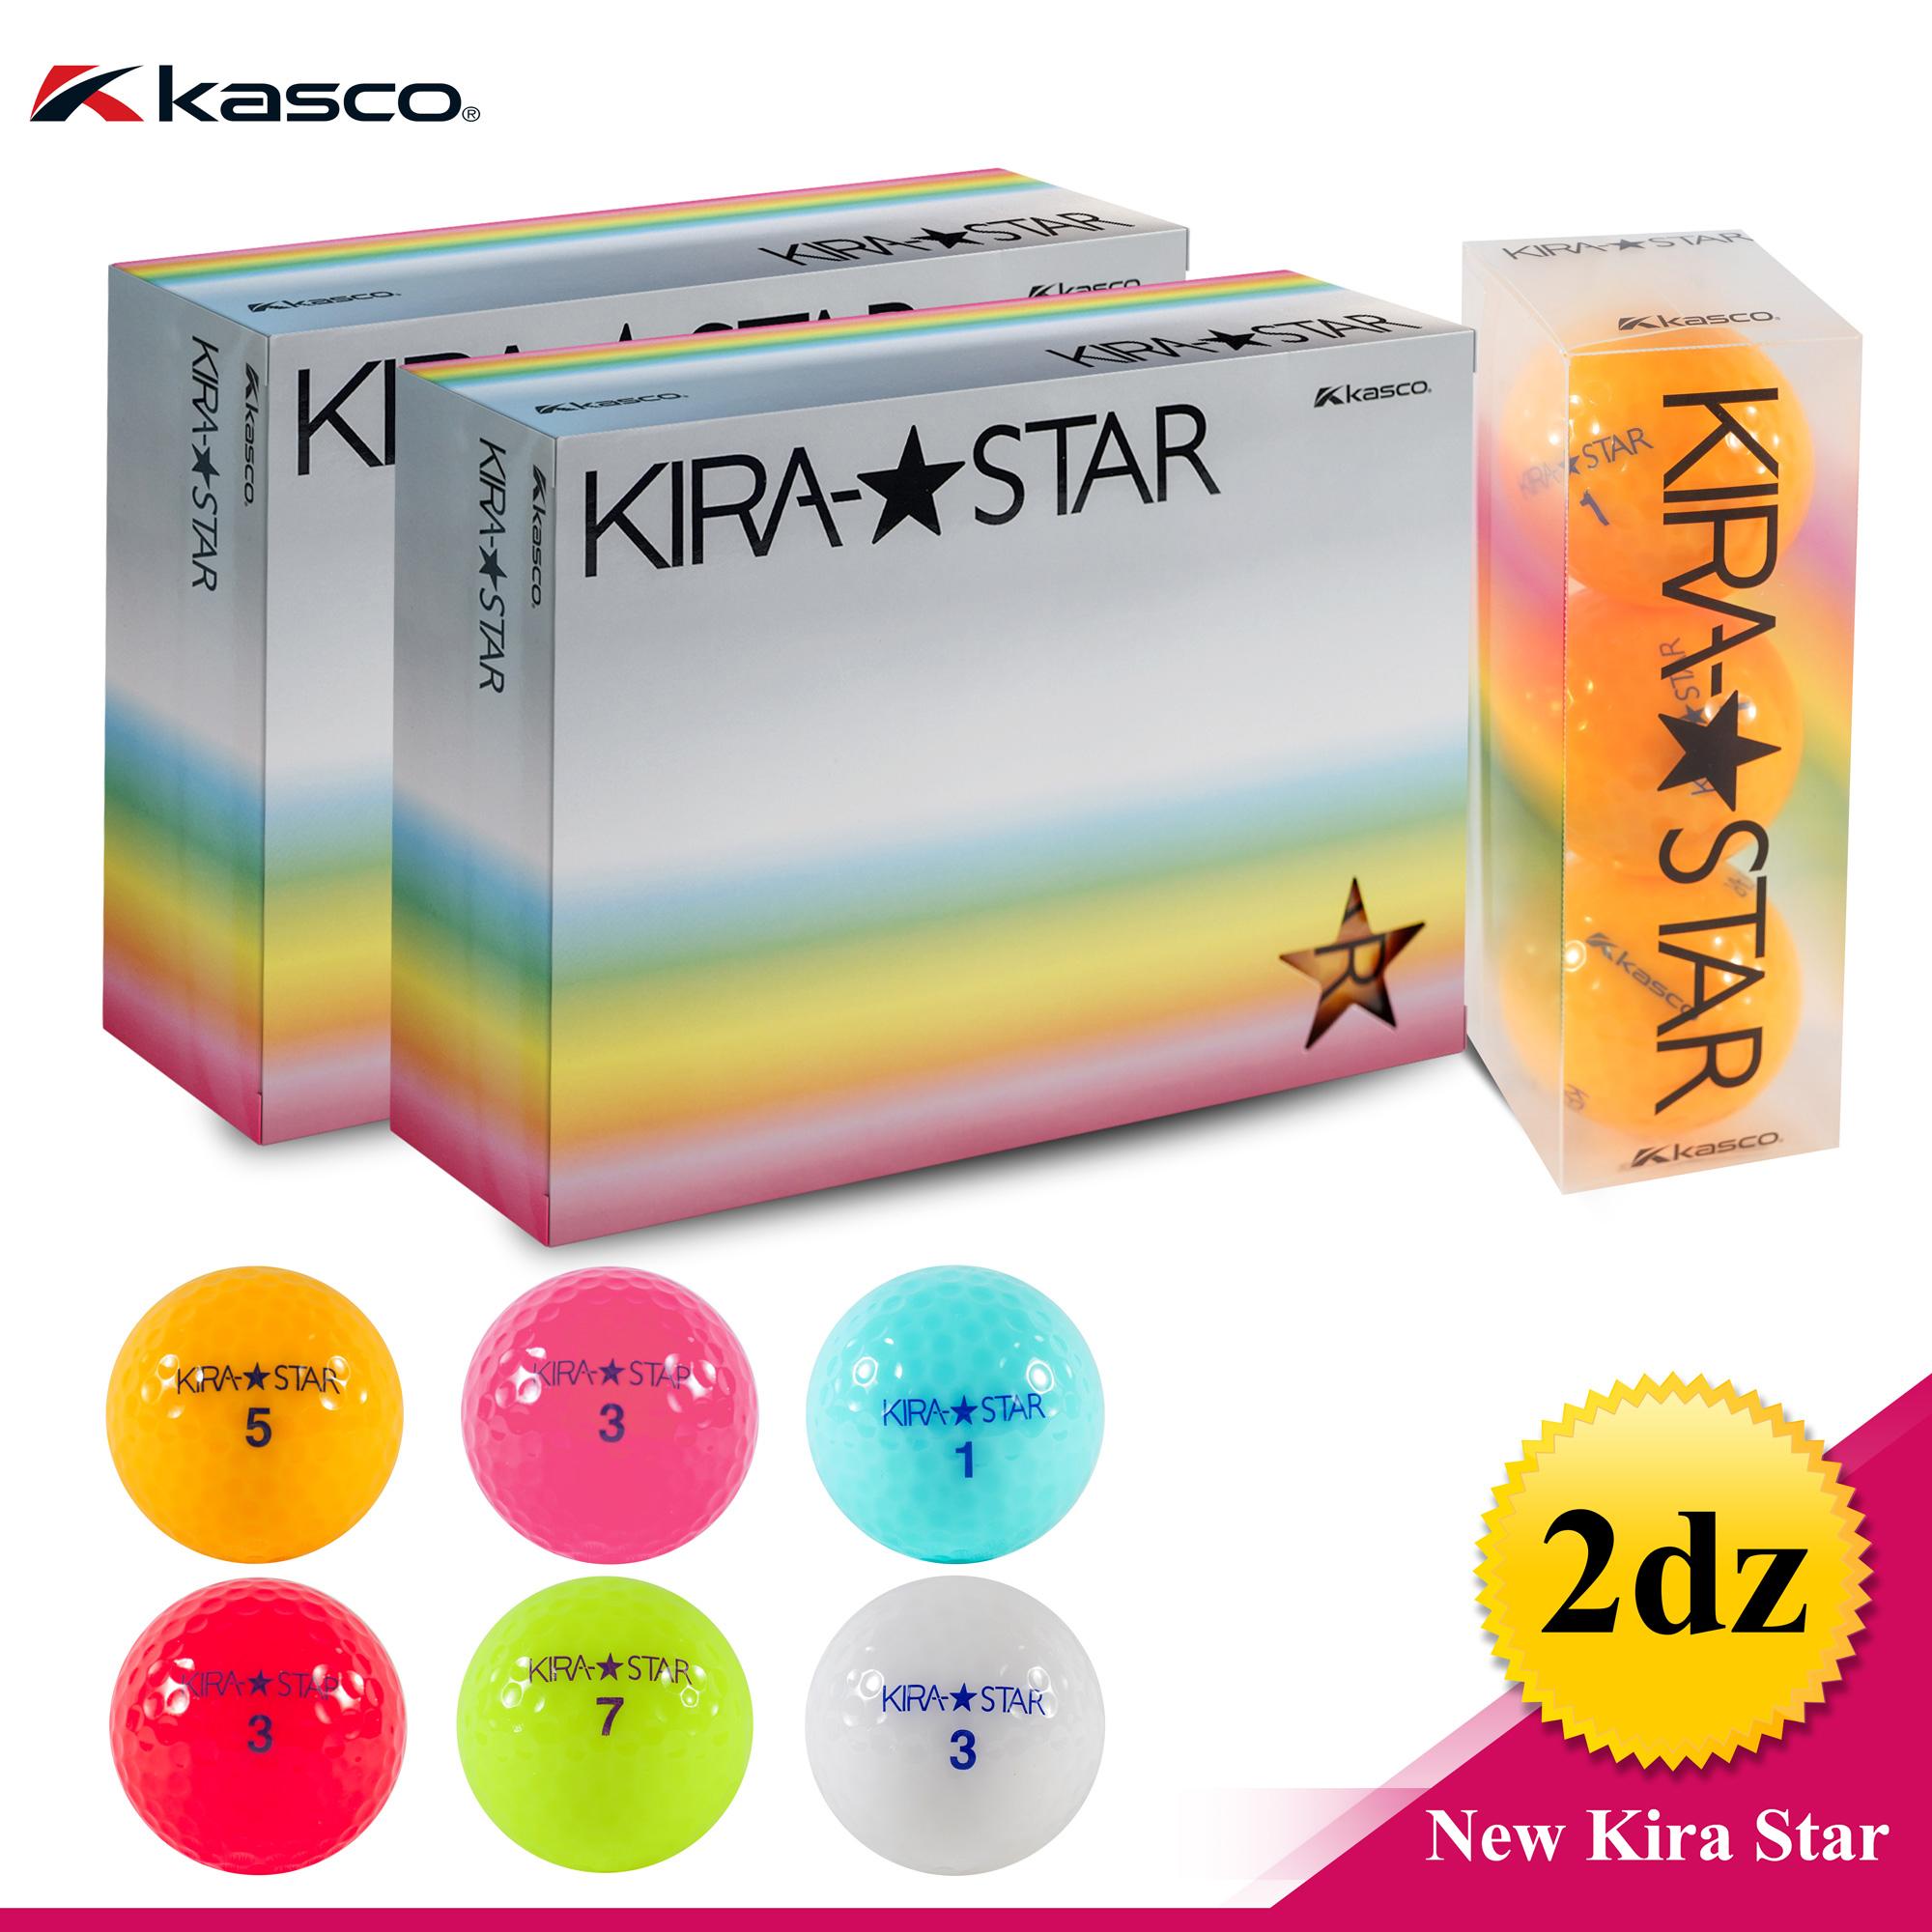 Kasco NEW KIRA STAR (2dz pack)